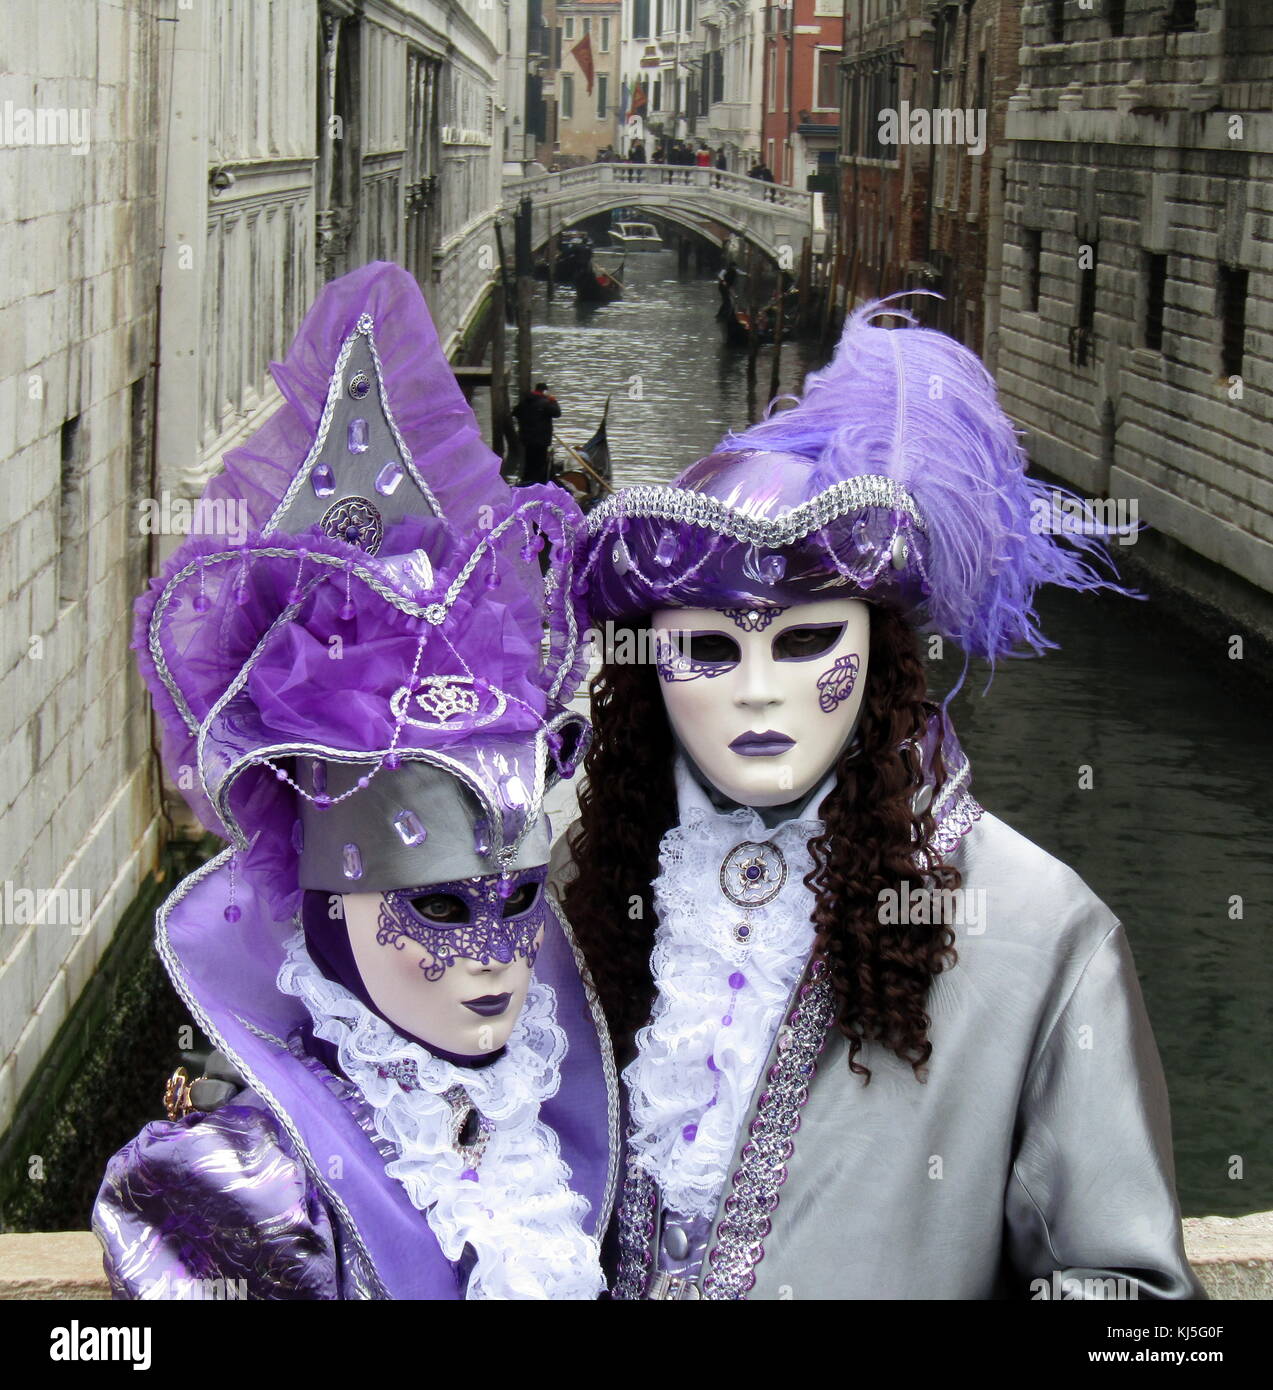 Les participants costumés au Carnaval de Venise (Carnevale di Venezia), un festival annuel de Venise, Italie. A commencé à se souvenir d'une victoire de la 'Serenissima Repubblica' contre le patriarche d'Aquilée, dans l'année 1162. En l'honneur de cette victoire, les gens ont commencé à danser et à se rassembler à la place San Marco. Banque D'Images